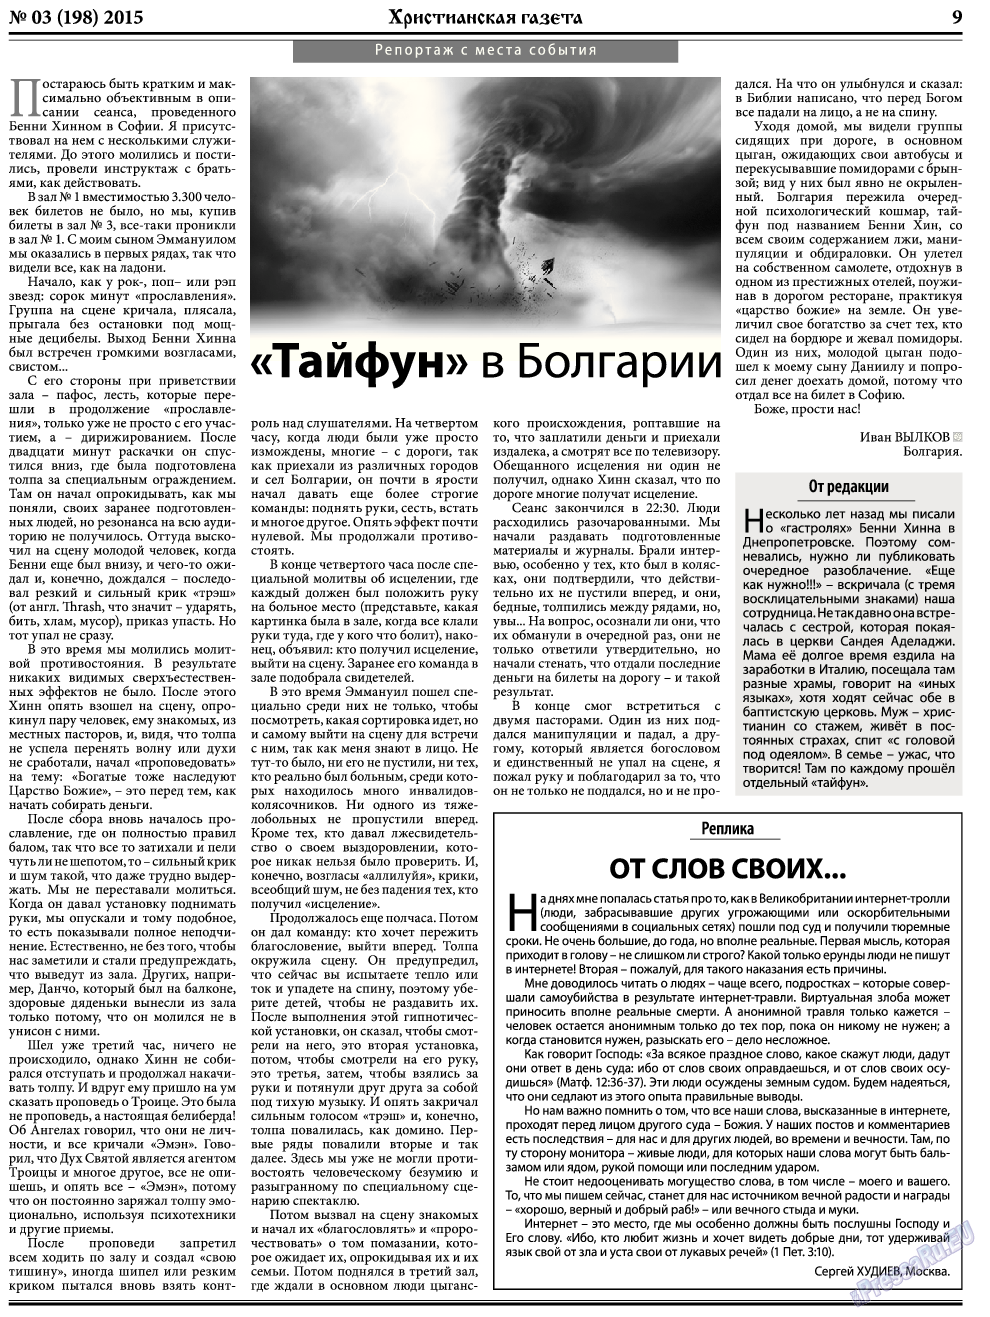 Христианская газета, газета. 2015 №3 стр.9